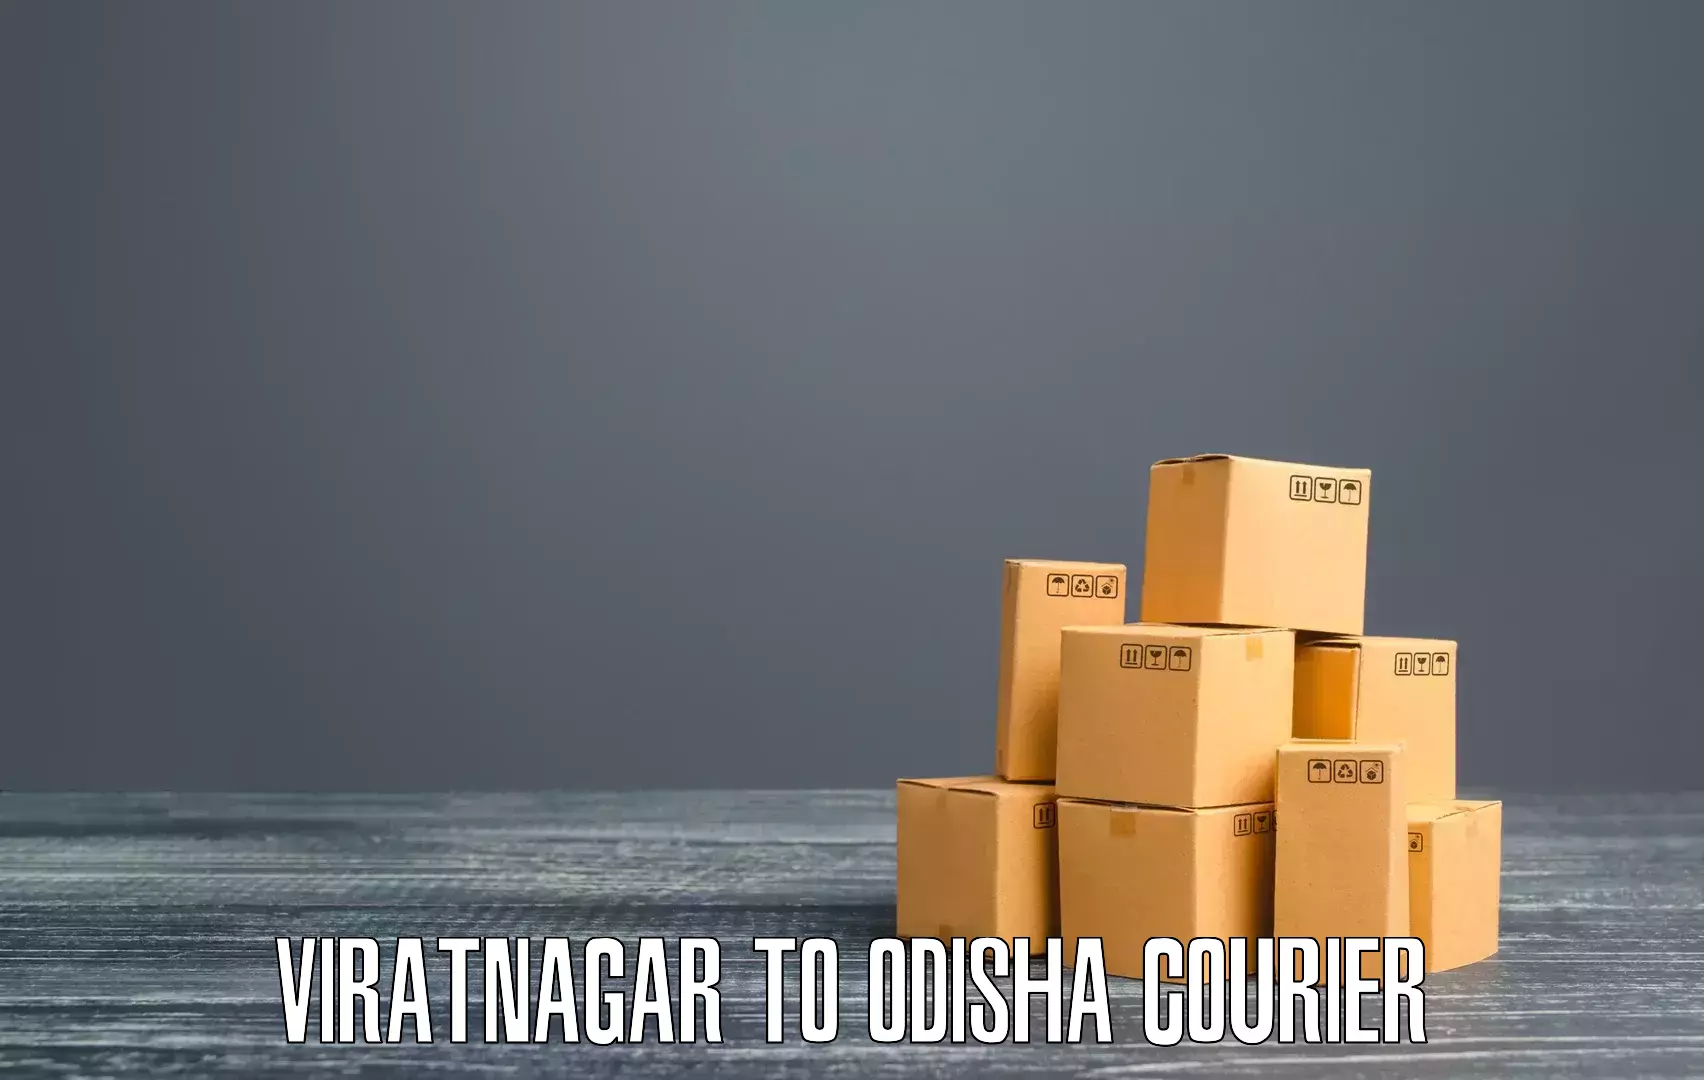 Comprehensive freight services in Viratnagar to Cuttack